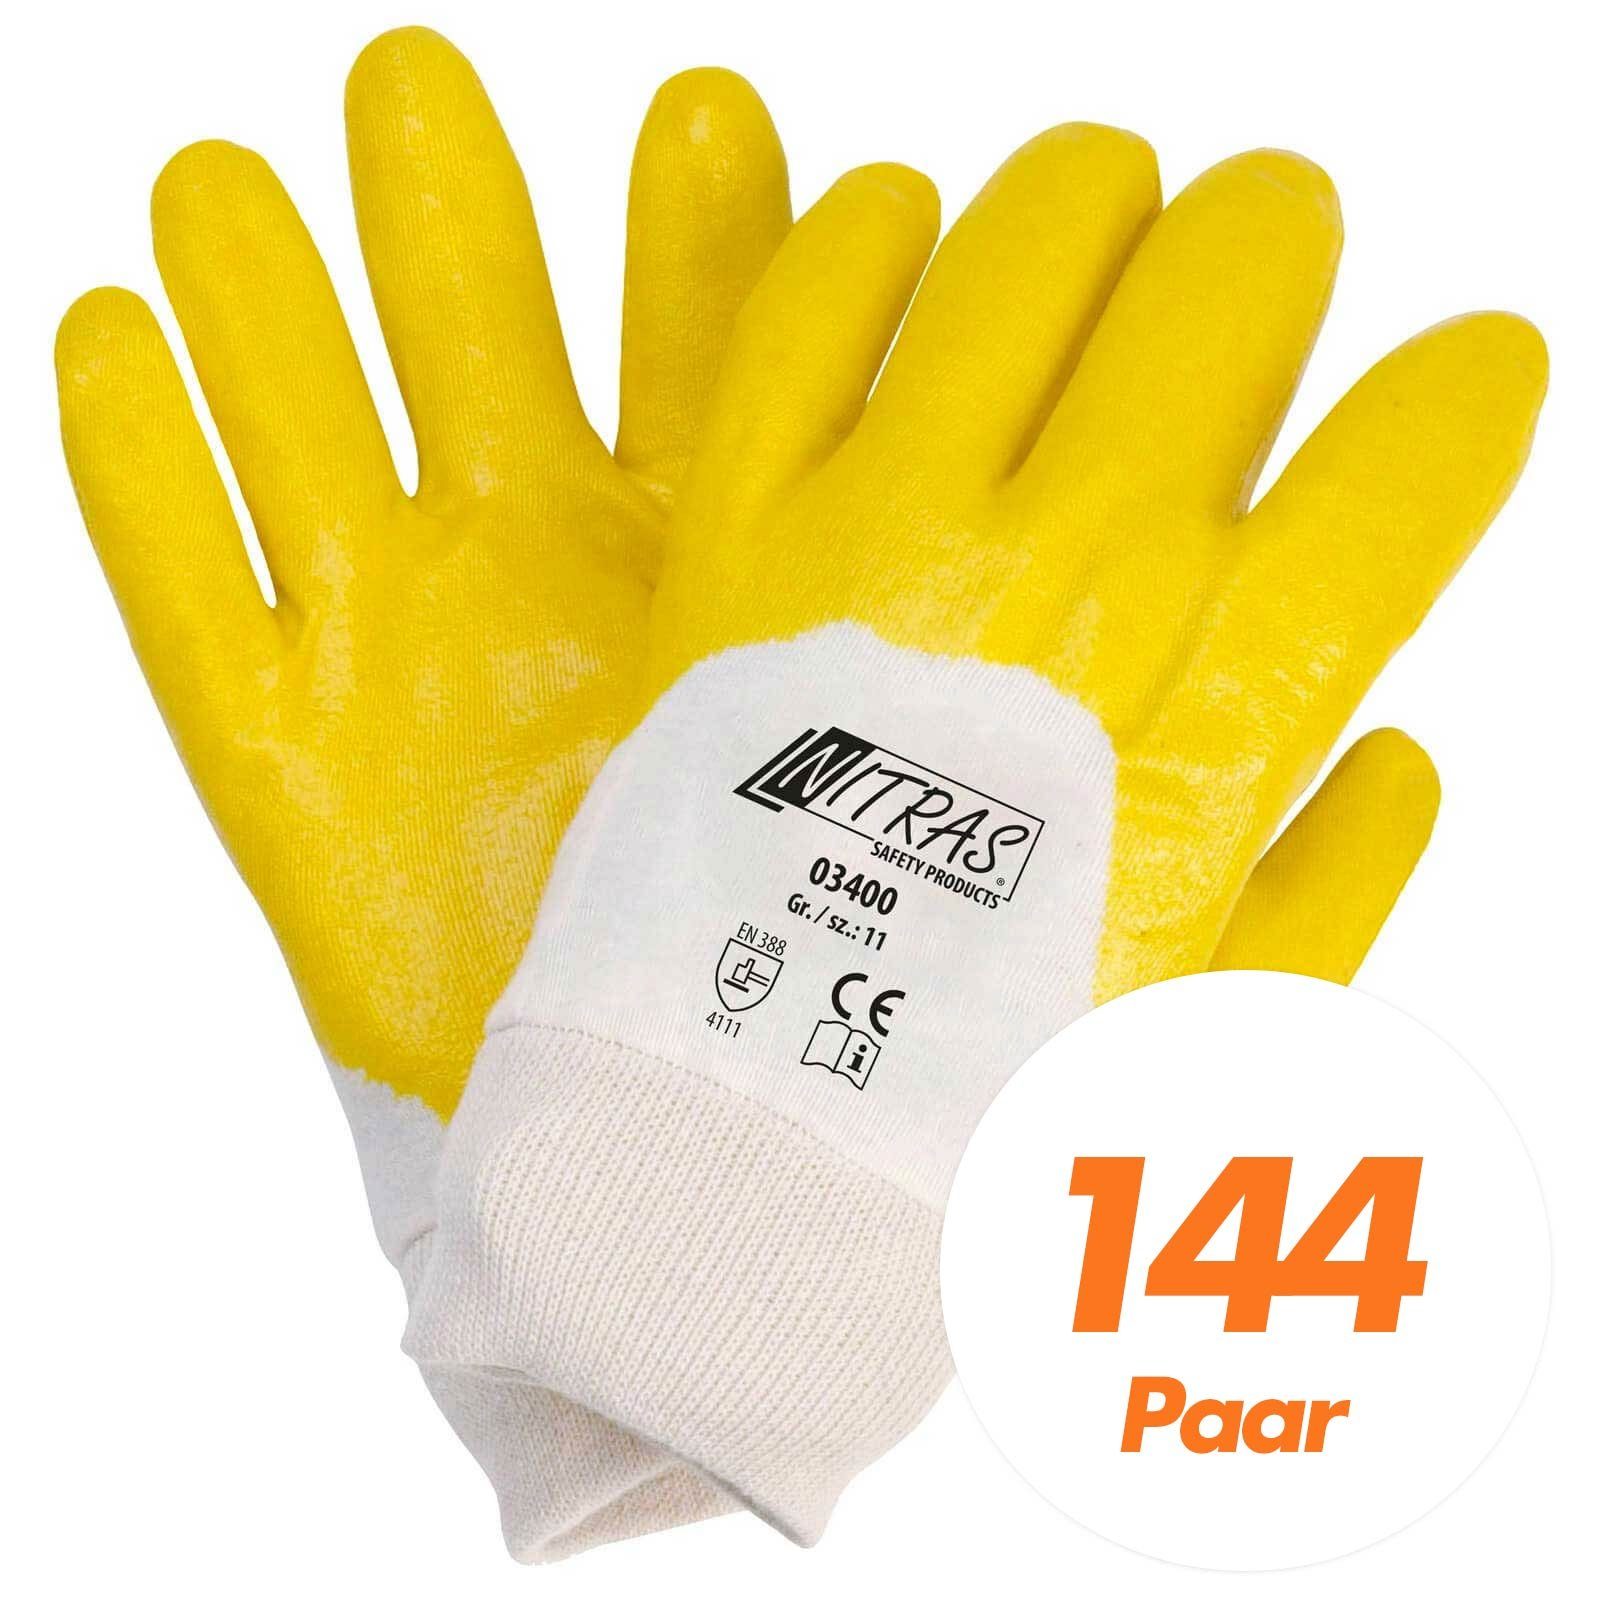 03400 teilbeschichtet Handschuhe Nitril-Handschuhe Nitras 144 - Nitrilhandschuhe NITRAS Paar (Spar-Set)